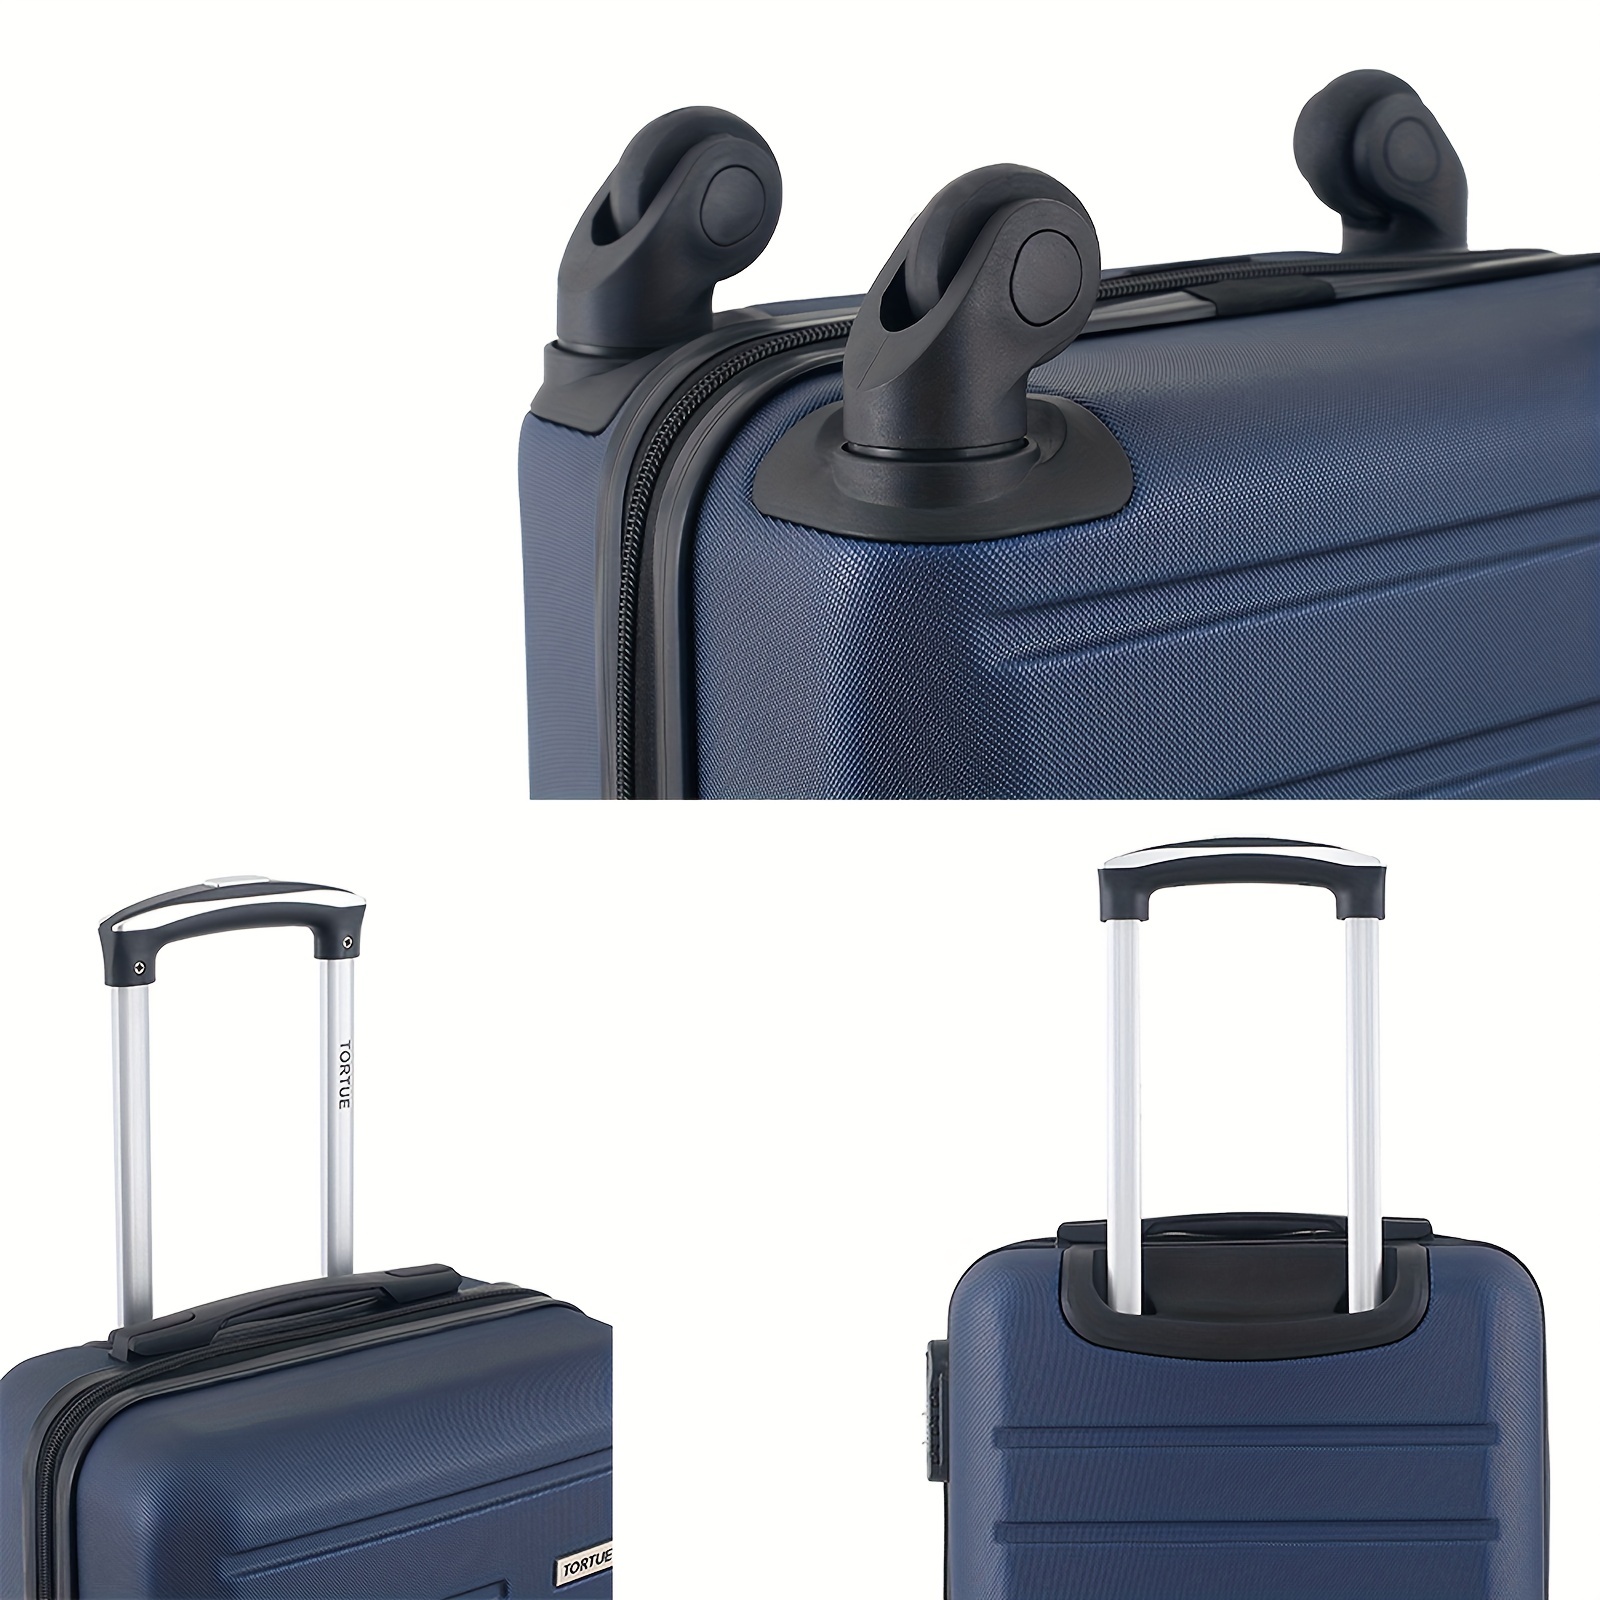 Tripcomp Juego de maletas duraderas de viaje con ruedas giratorias TSA,  equipaje de mano, juego de 3 piezas (20 pulgadas/24 pulgadas/28 pulgadas)